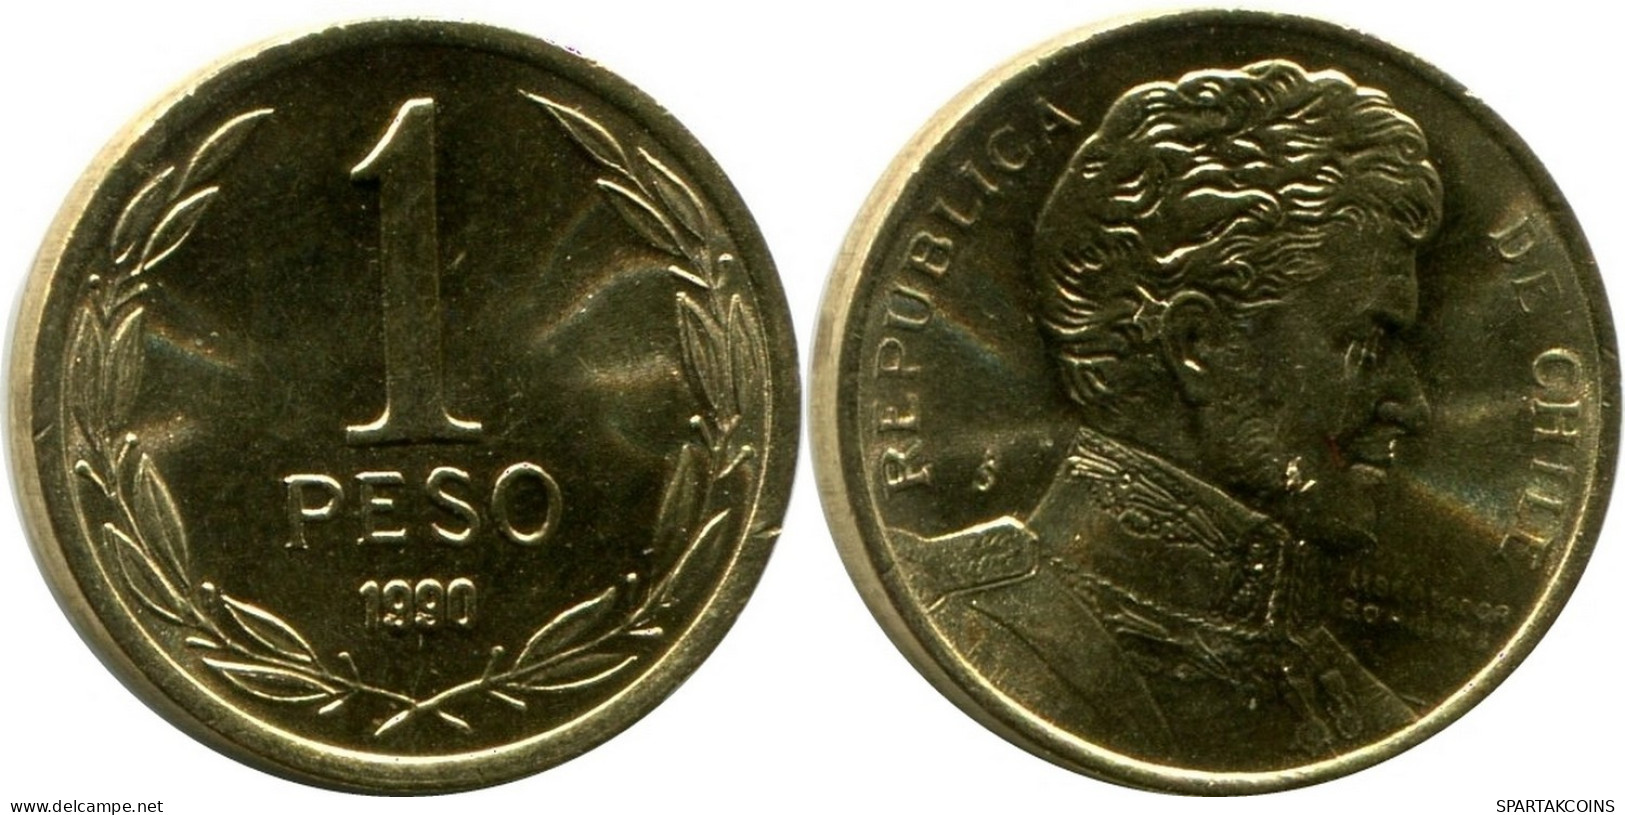 1 PESO 1990 CHILE UNC Coin #M10148.U.A - Cile